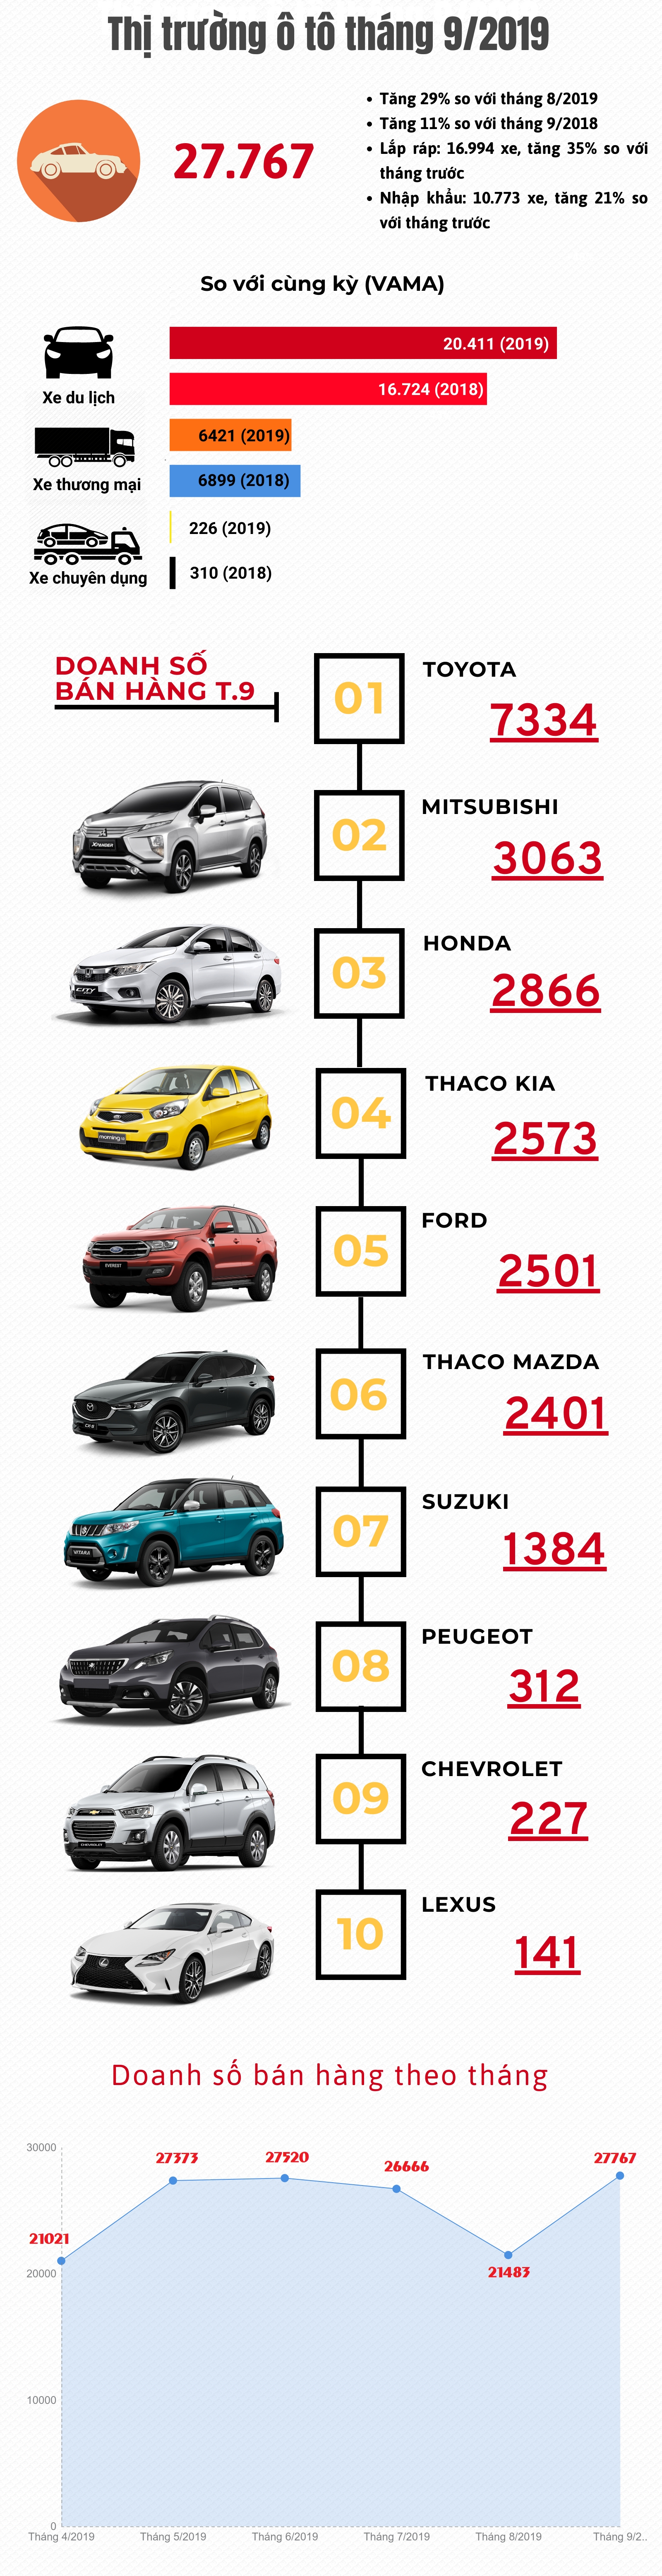 [Infographic] Thị trường ô tô tháng 9/2019: Bật tăng trở lại